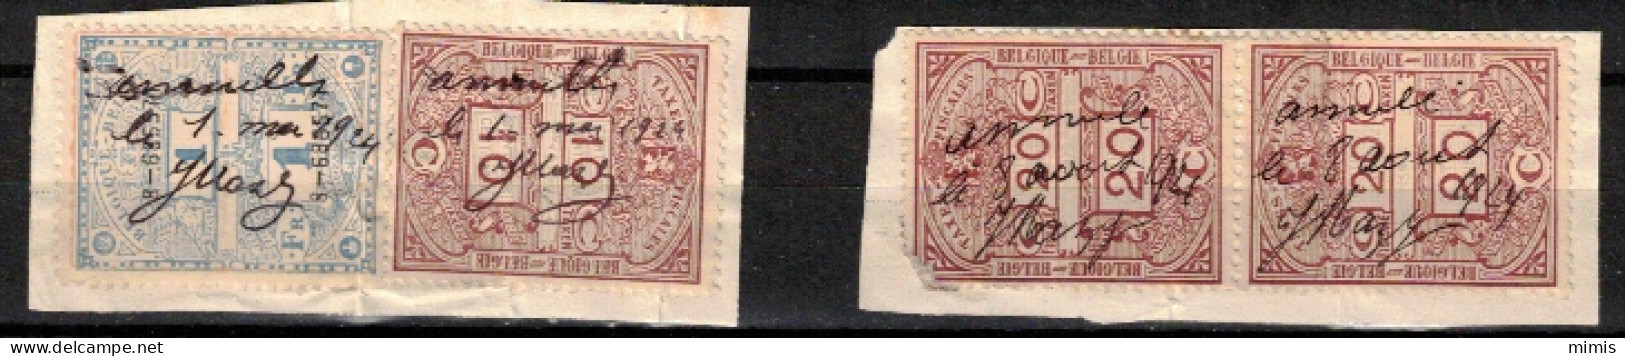 BELGIQUE      Différents Timbres Fiscaux - Postzegels